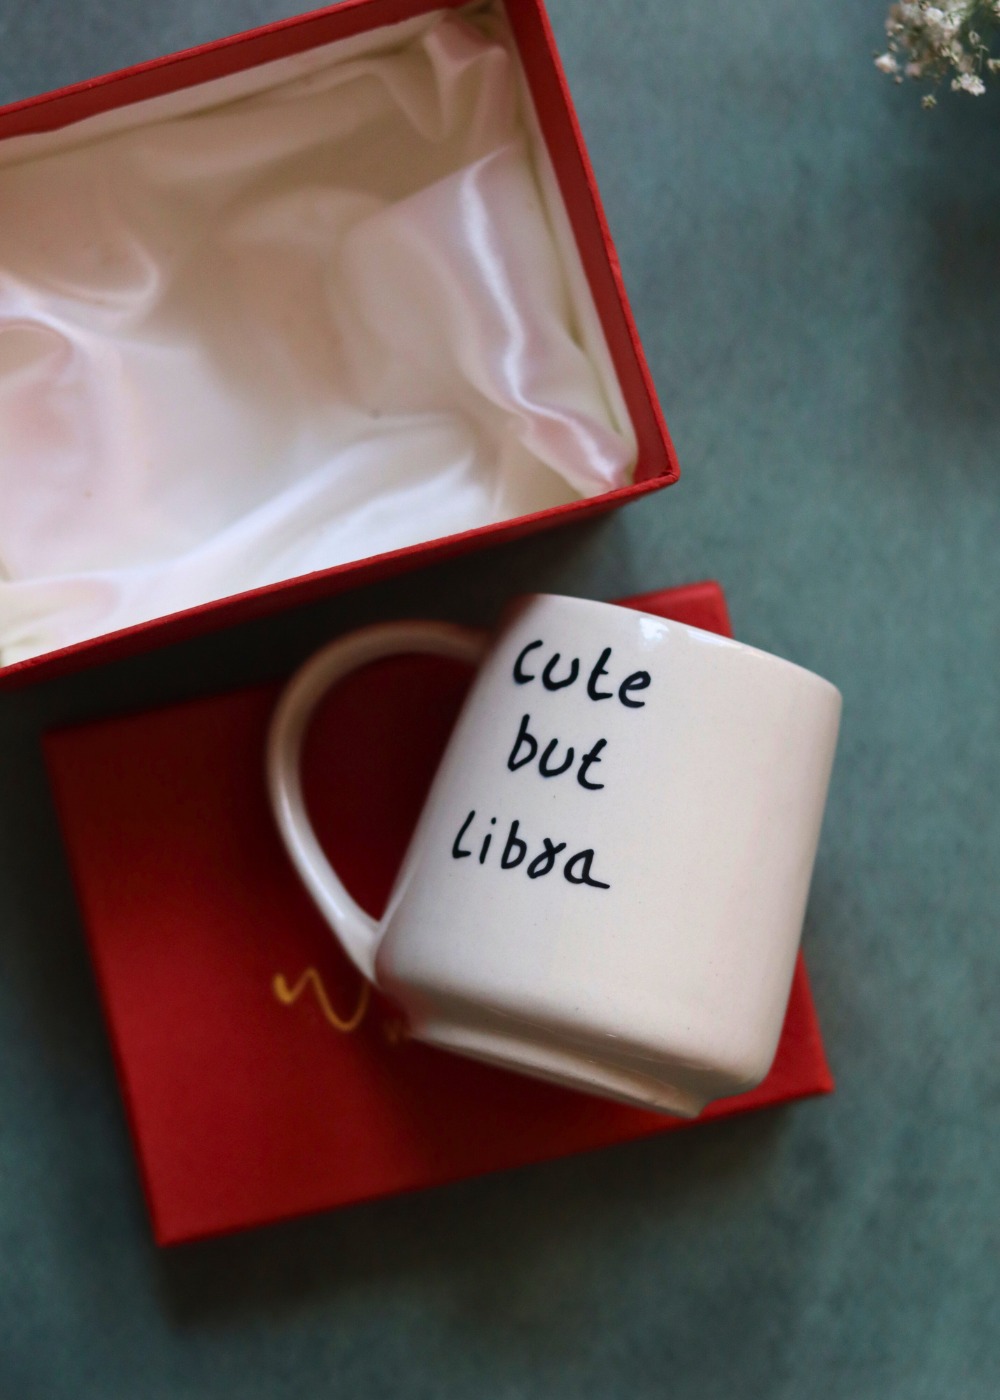 cute but libra mug in a gift box made by ceramic